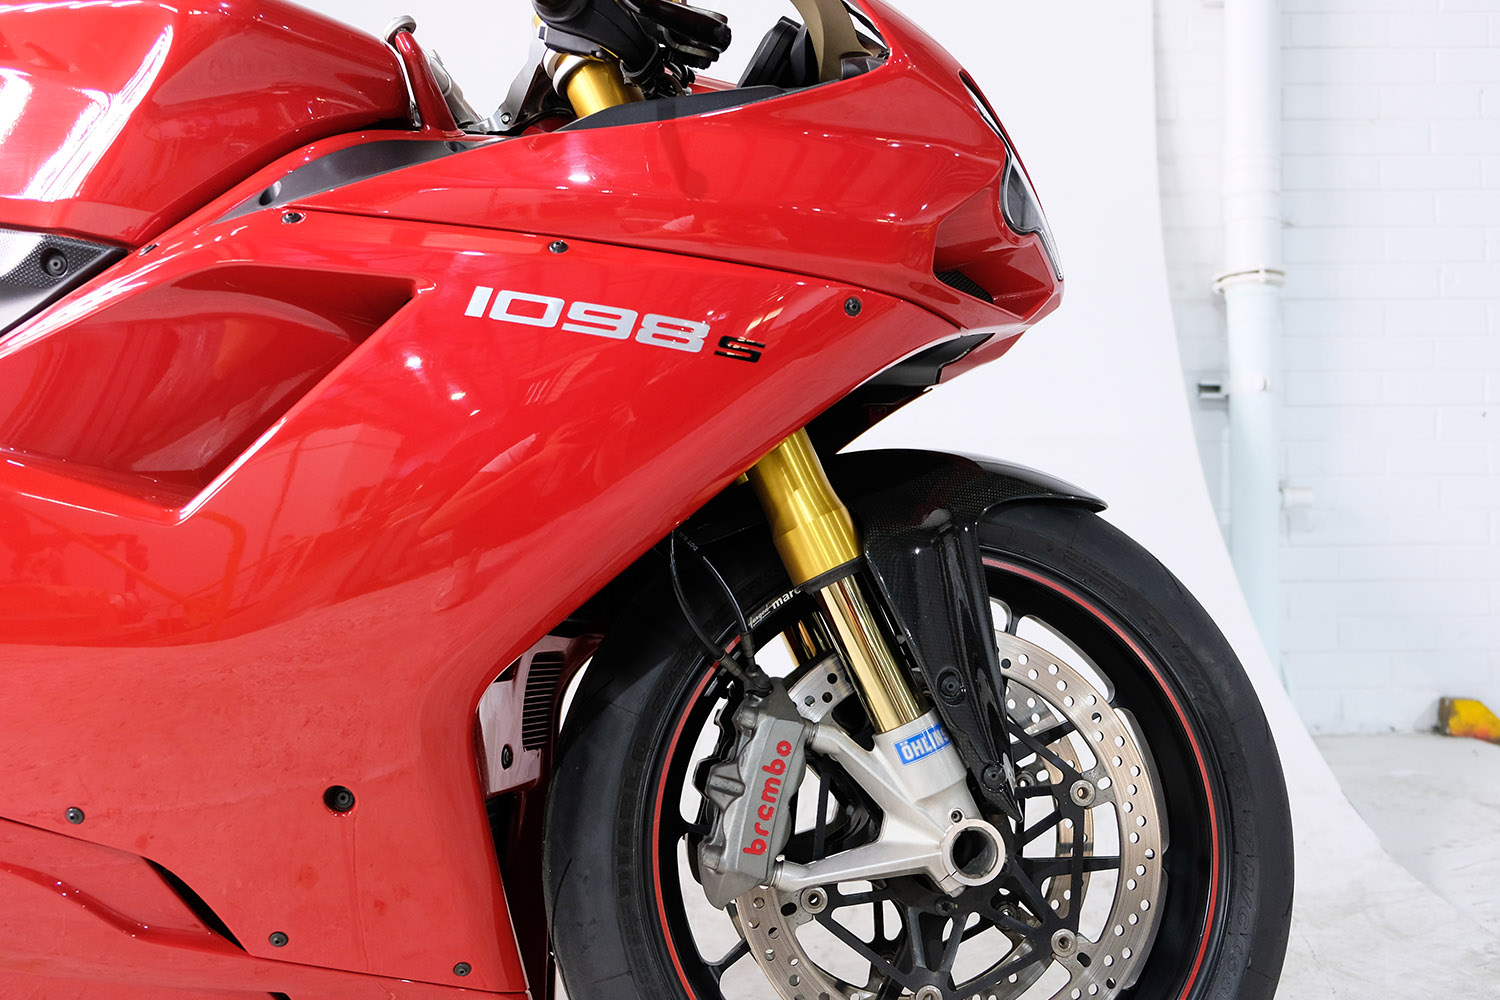 2008 Ducati 1098S_0010_DSCF2507.jpg